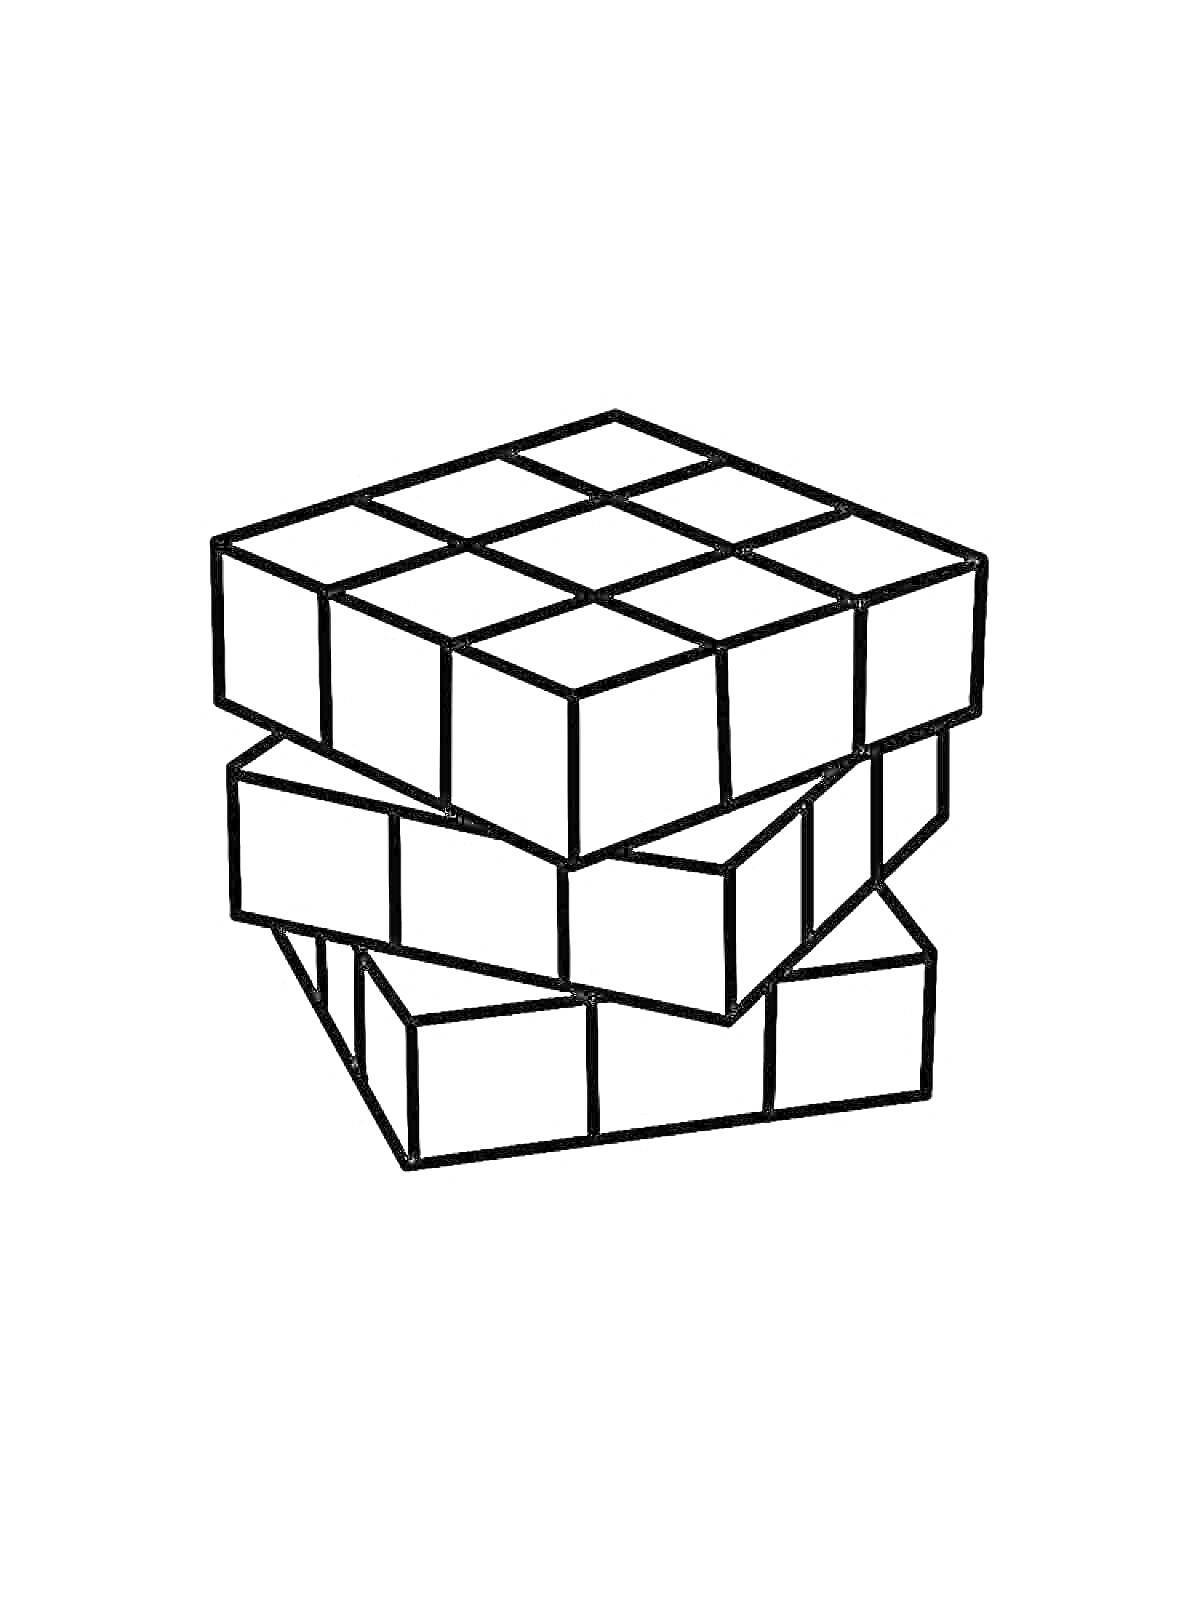 Раскраска Изображение вращающегося Кубика Рубика с тремя поворотами